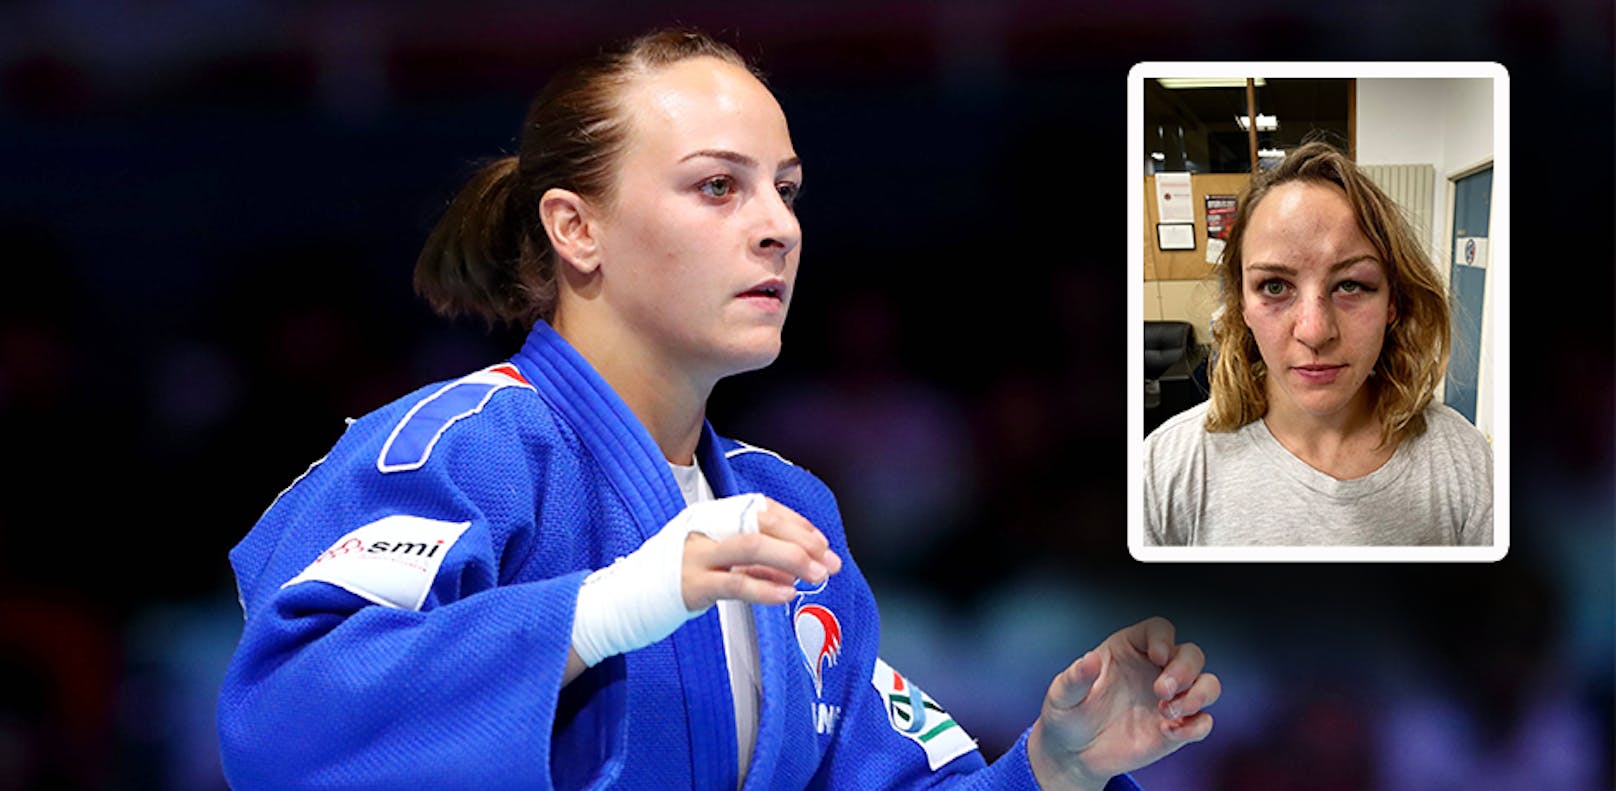 Judo-Olympiasiegerin von ihrem Partner attackiert